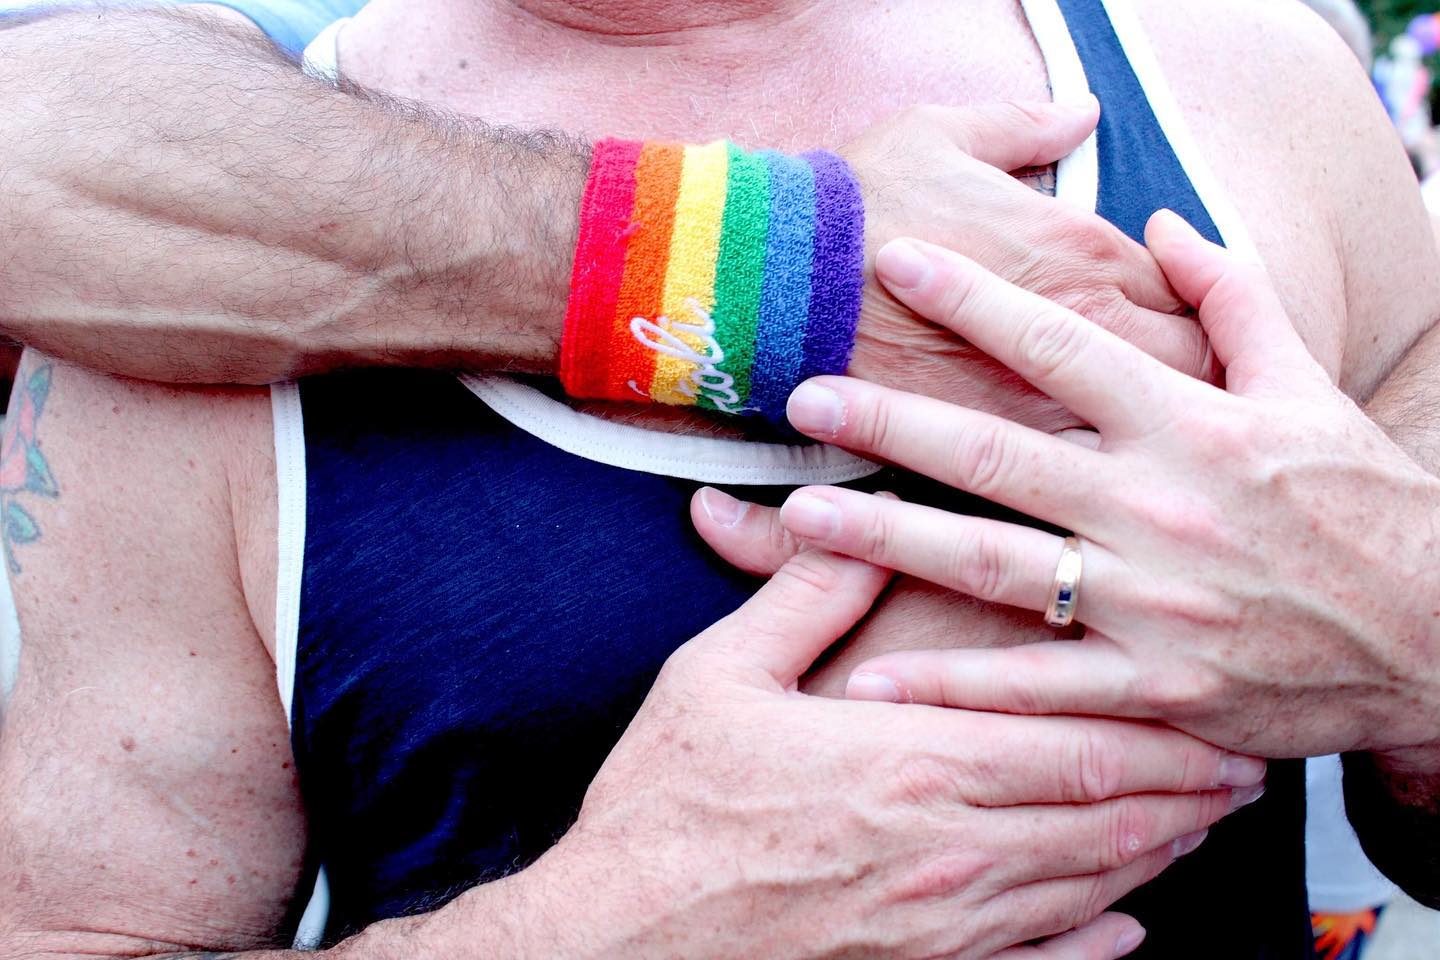 Neofaschisten starten Hassrede gegen die LGBTQ+-Gemeinschaft auf Kreta